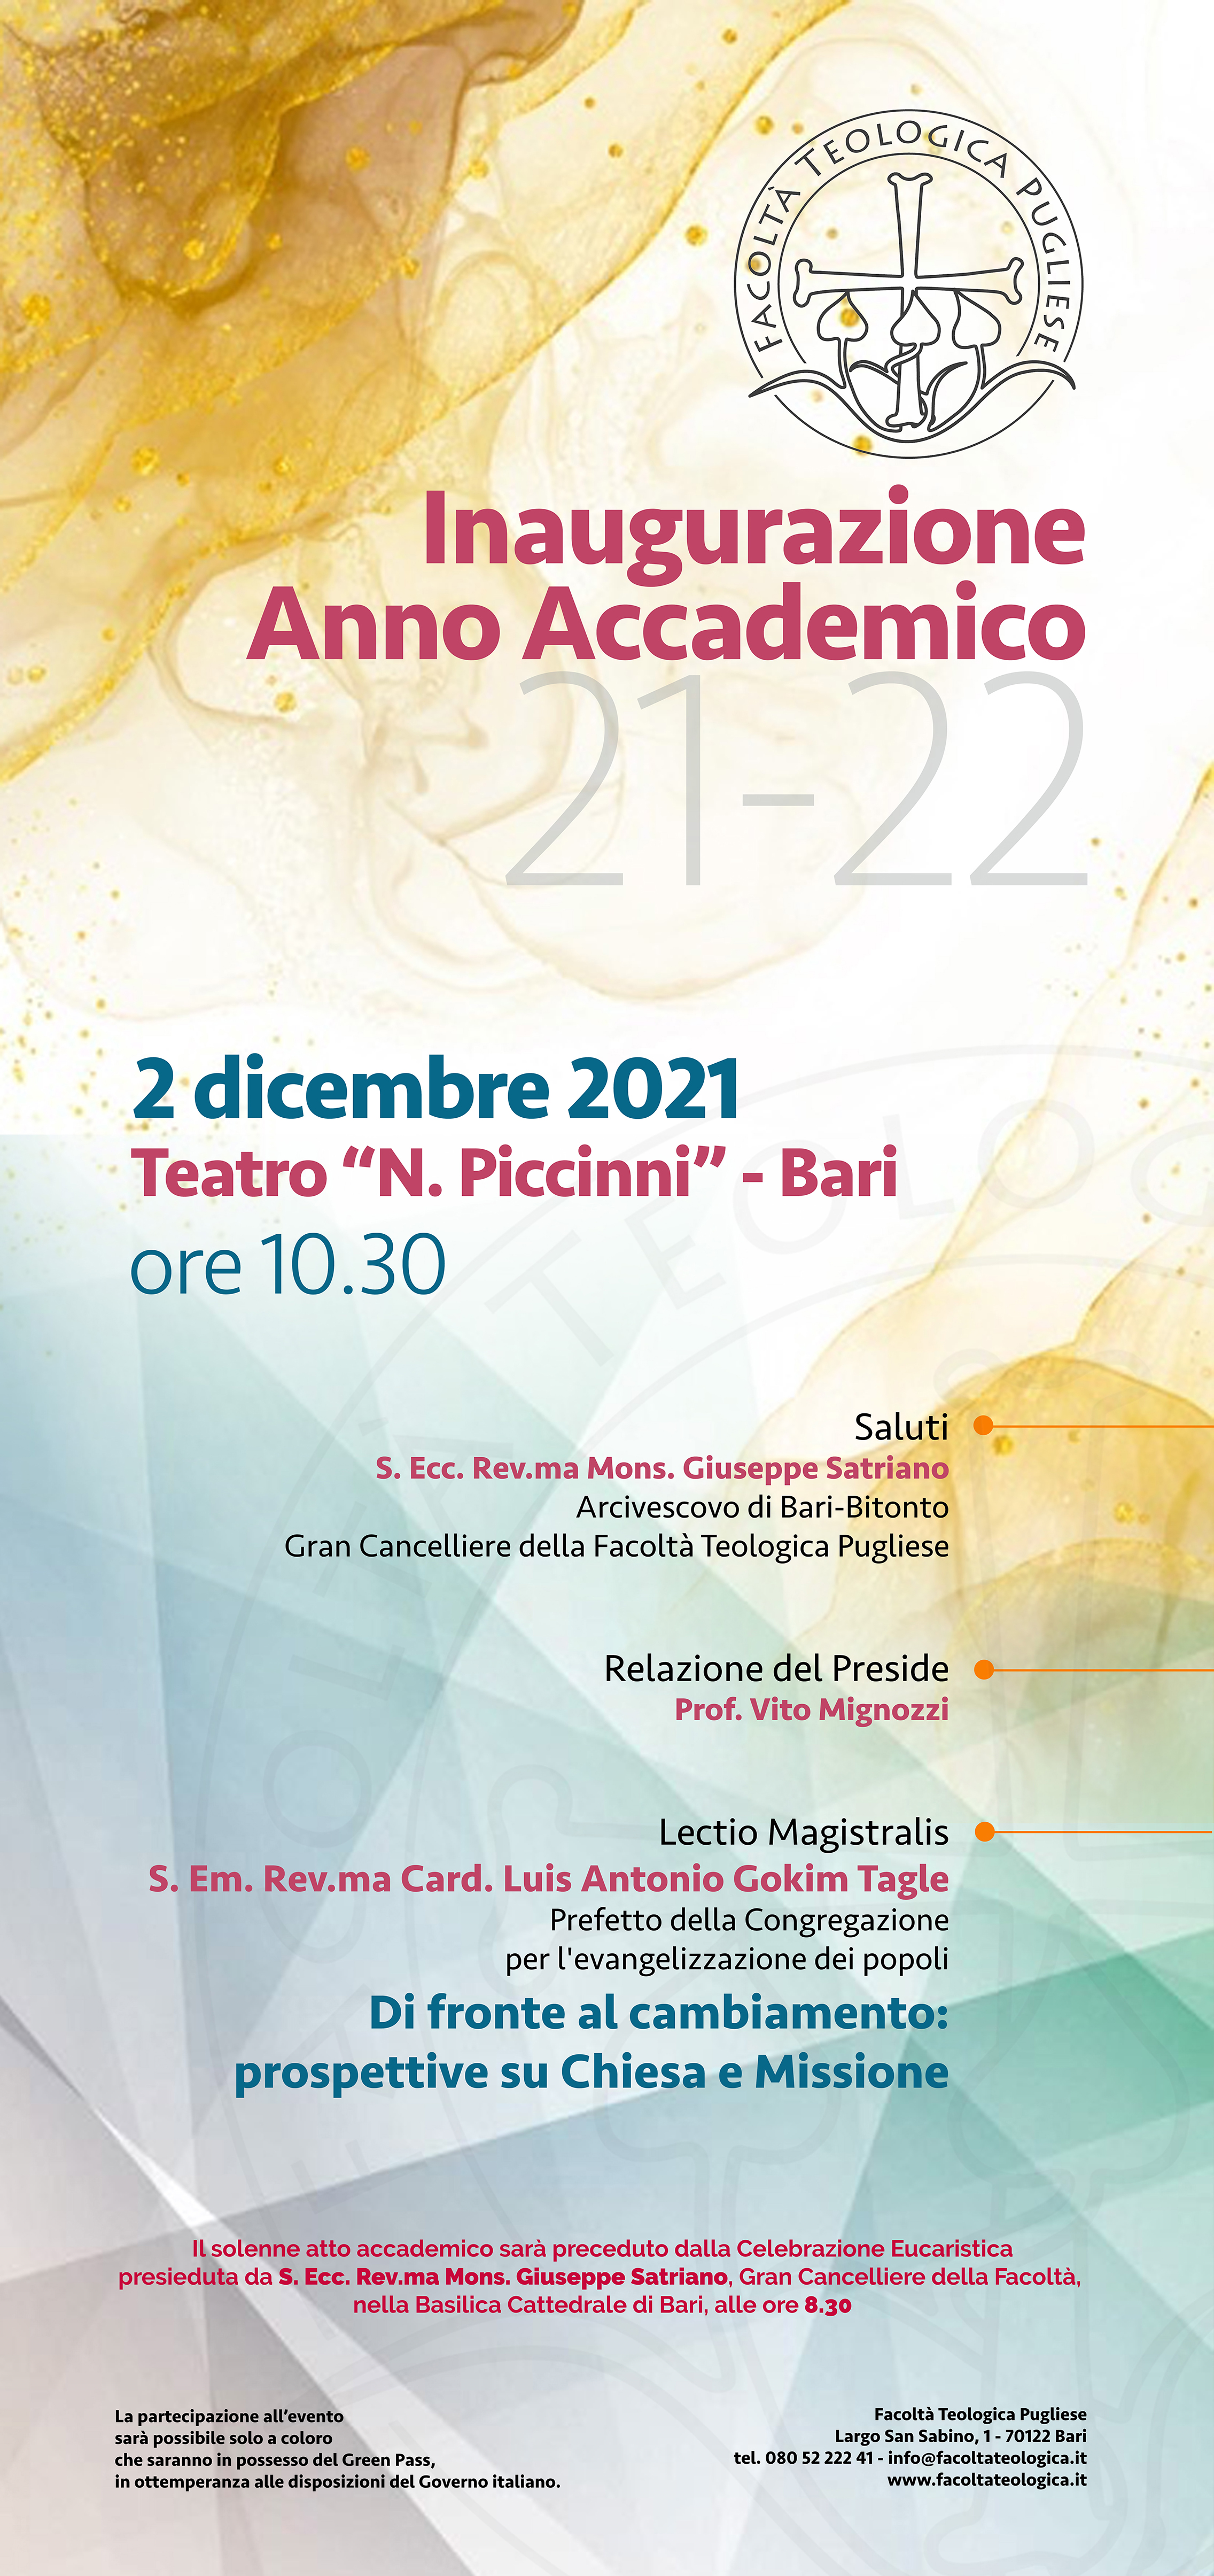 Inaugurazione
Anno Accademico 2021-2022